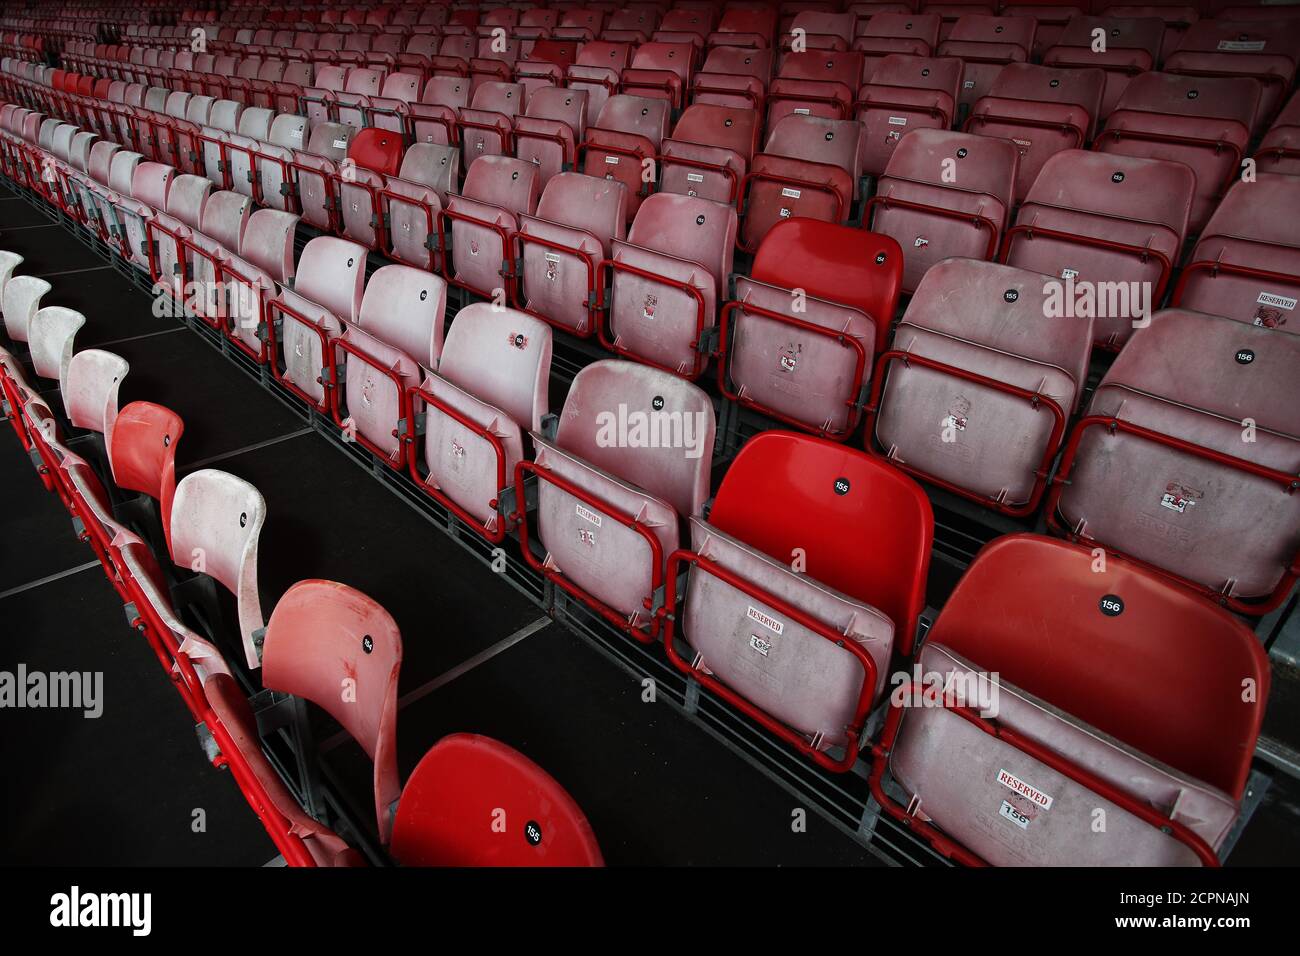 Una vista generale di posti vuoti all'interno del terreno prima della partita Sky Bet League due al People's Pension Stadium, Crawley. Foto Stock